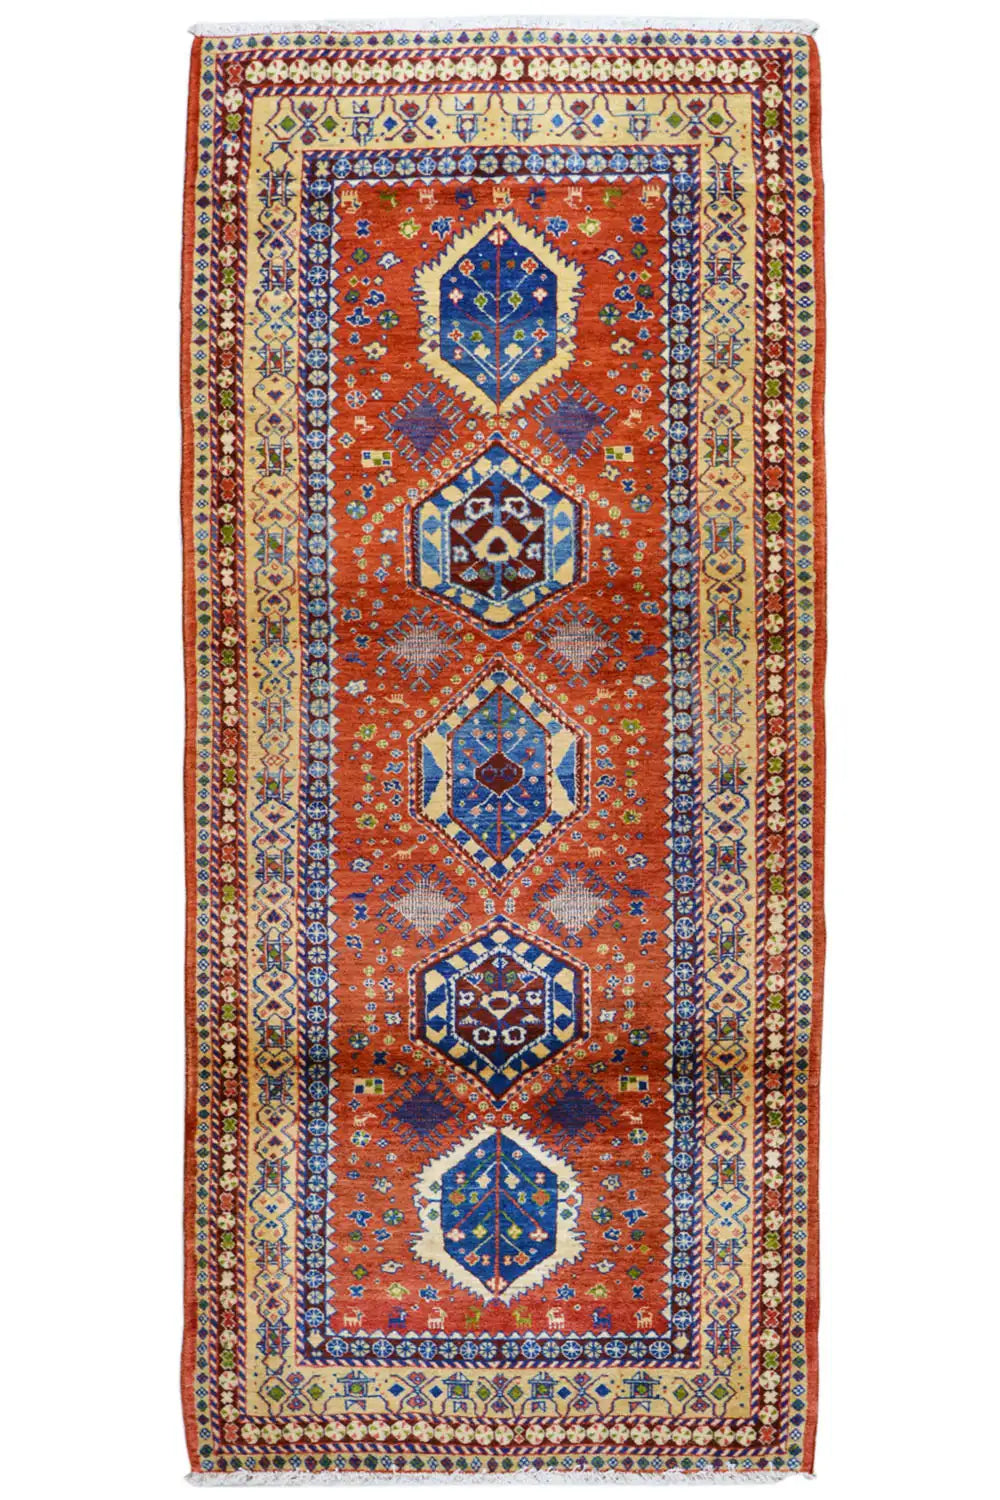 Immanlou Laufer - 905353 (282x116cm) - German Carpet Shop